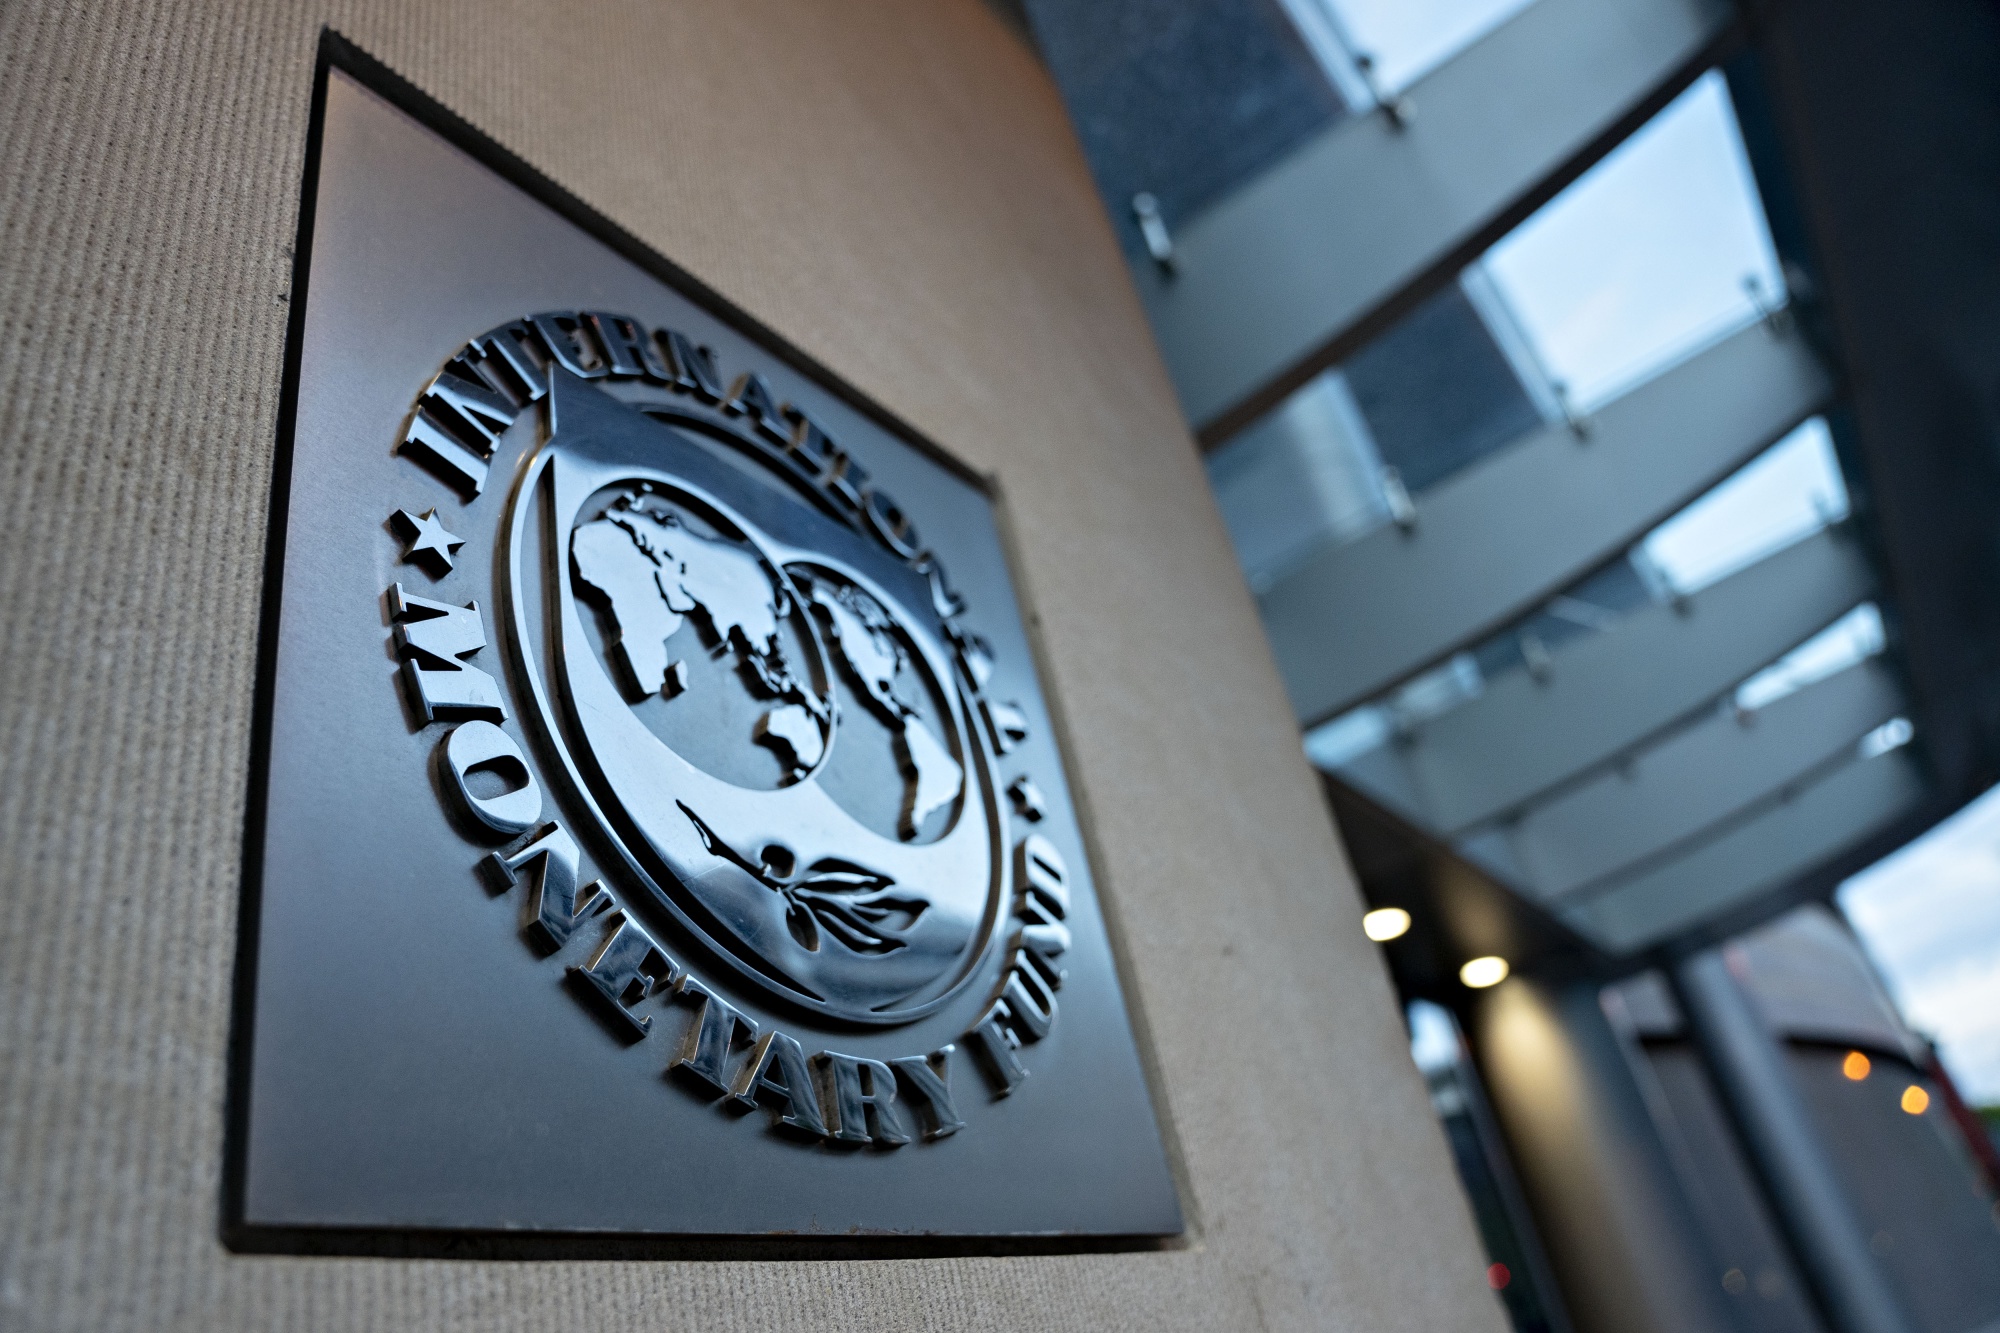 Ukraine sắp vay 15,6 tỷ USD từ IMF để củng cố tài chính - Ảnh 1.